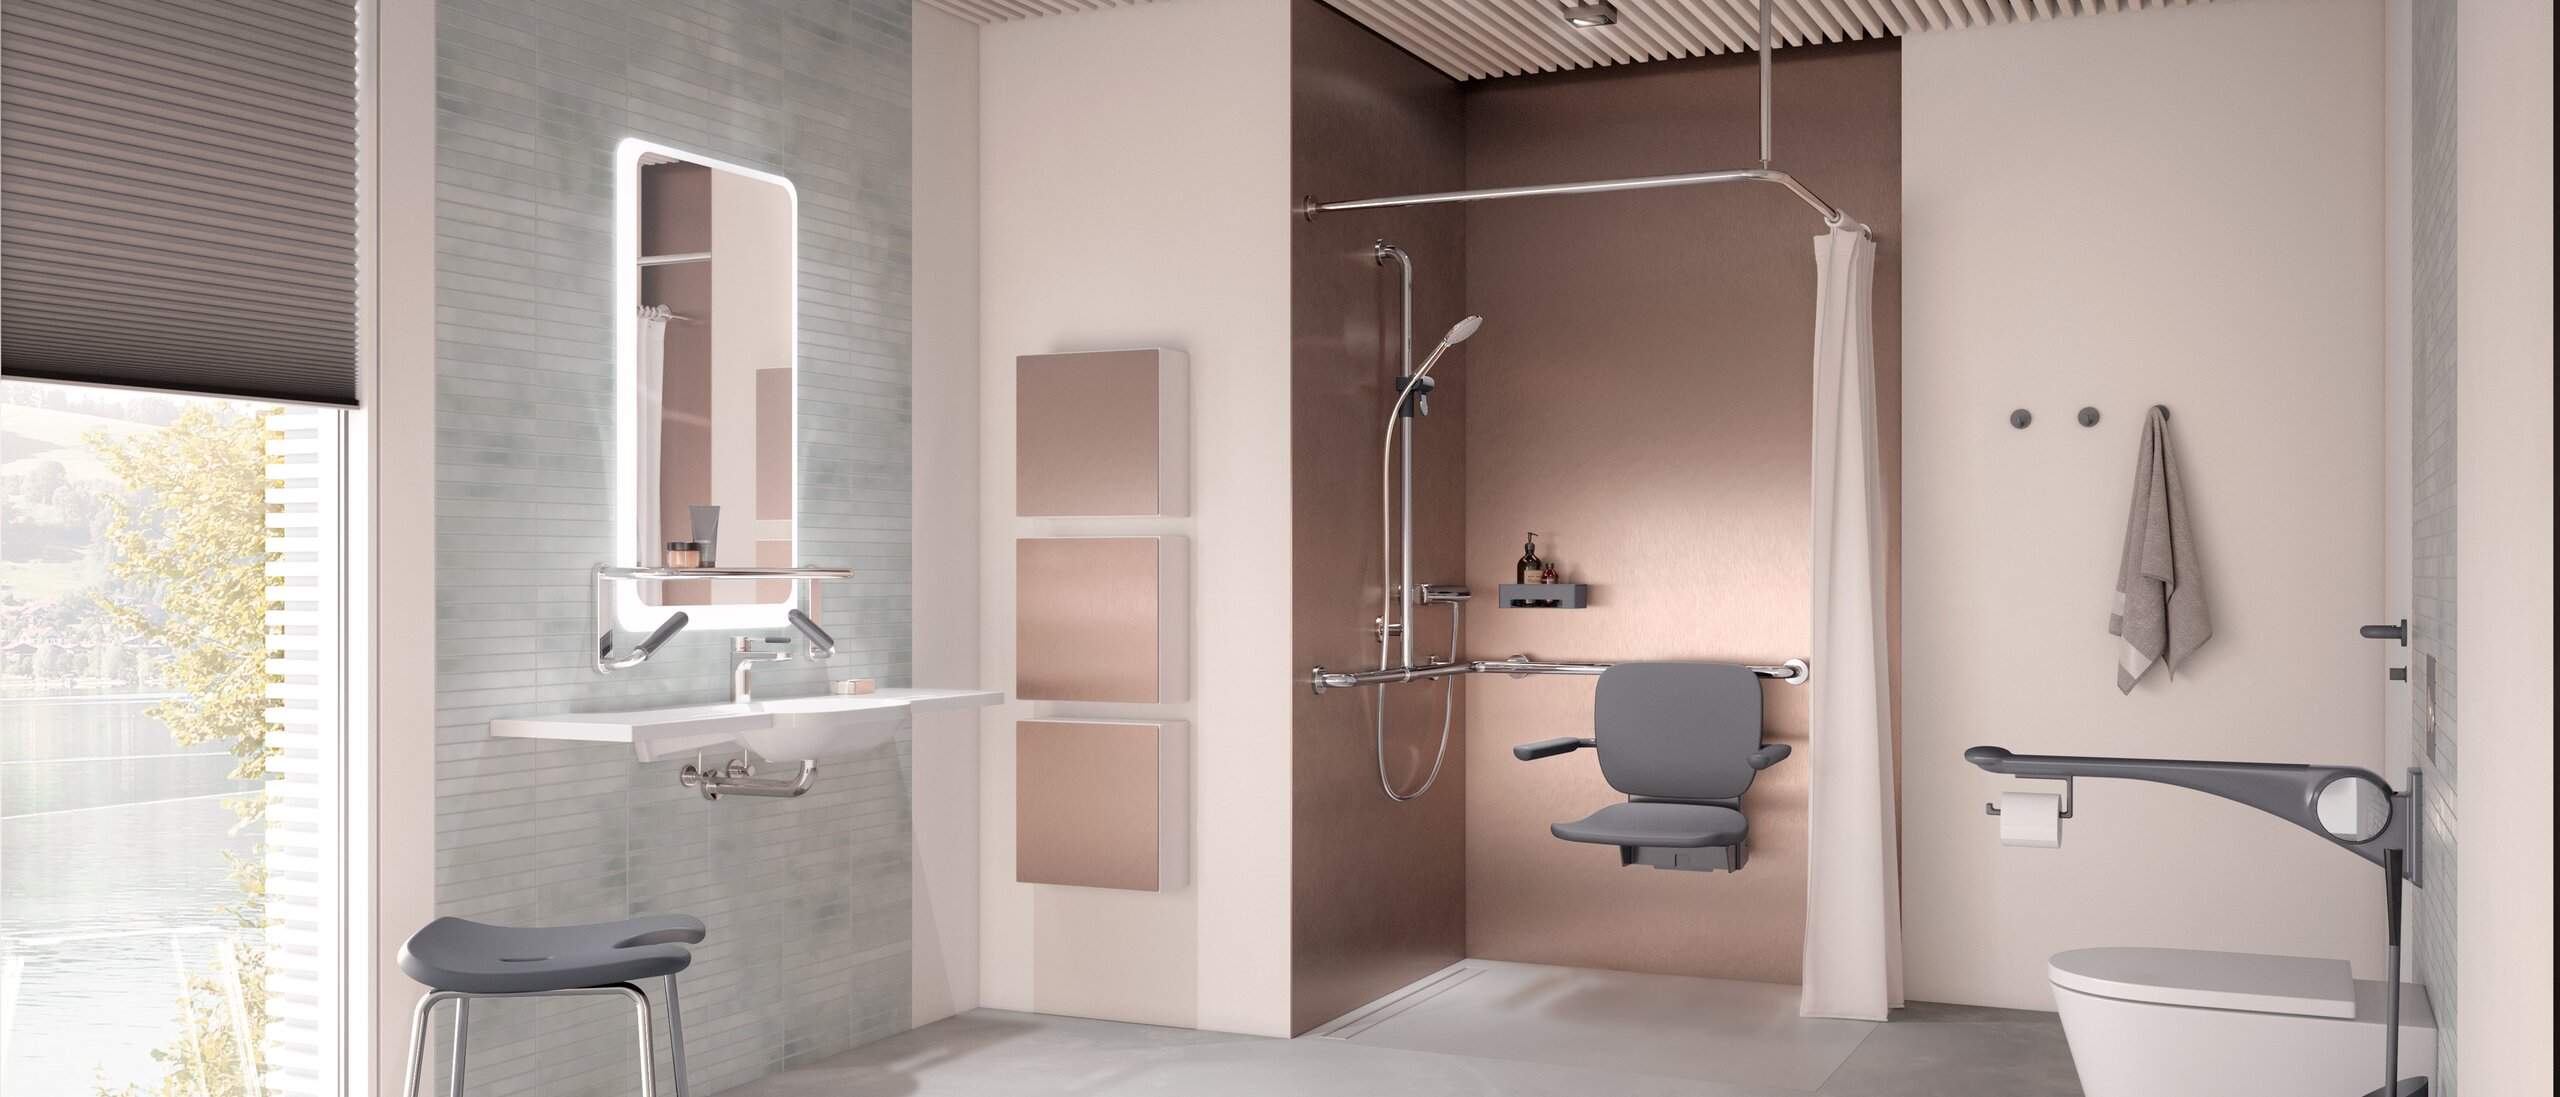 Barrierefreies Pflegebad mit Waschplatz, Duschbereich und WC ausgestattet mit HEWI LiftSystem in Anthrazit